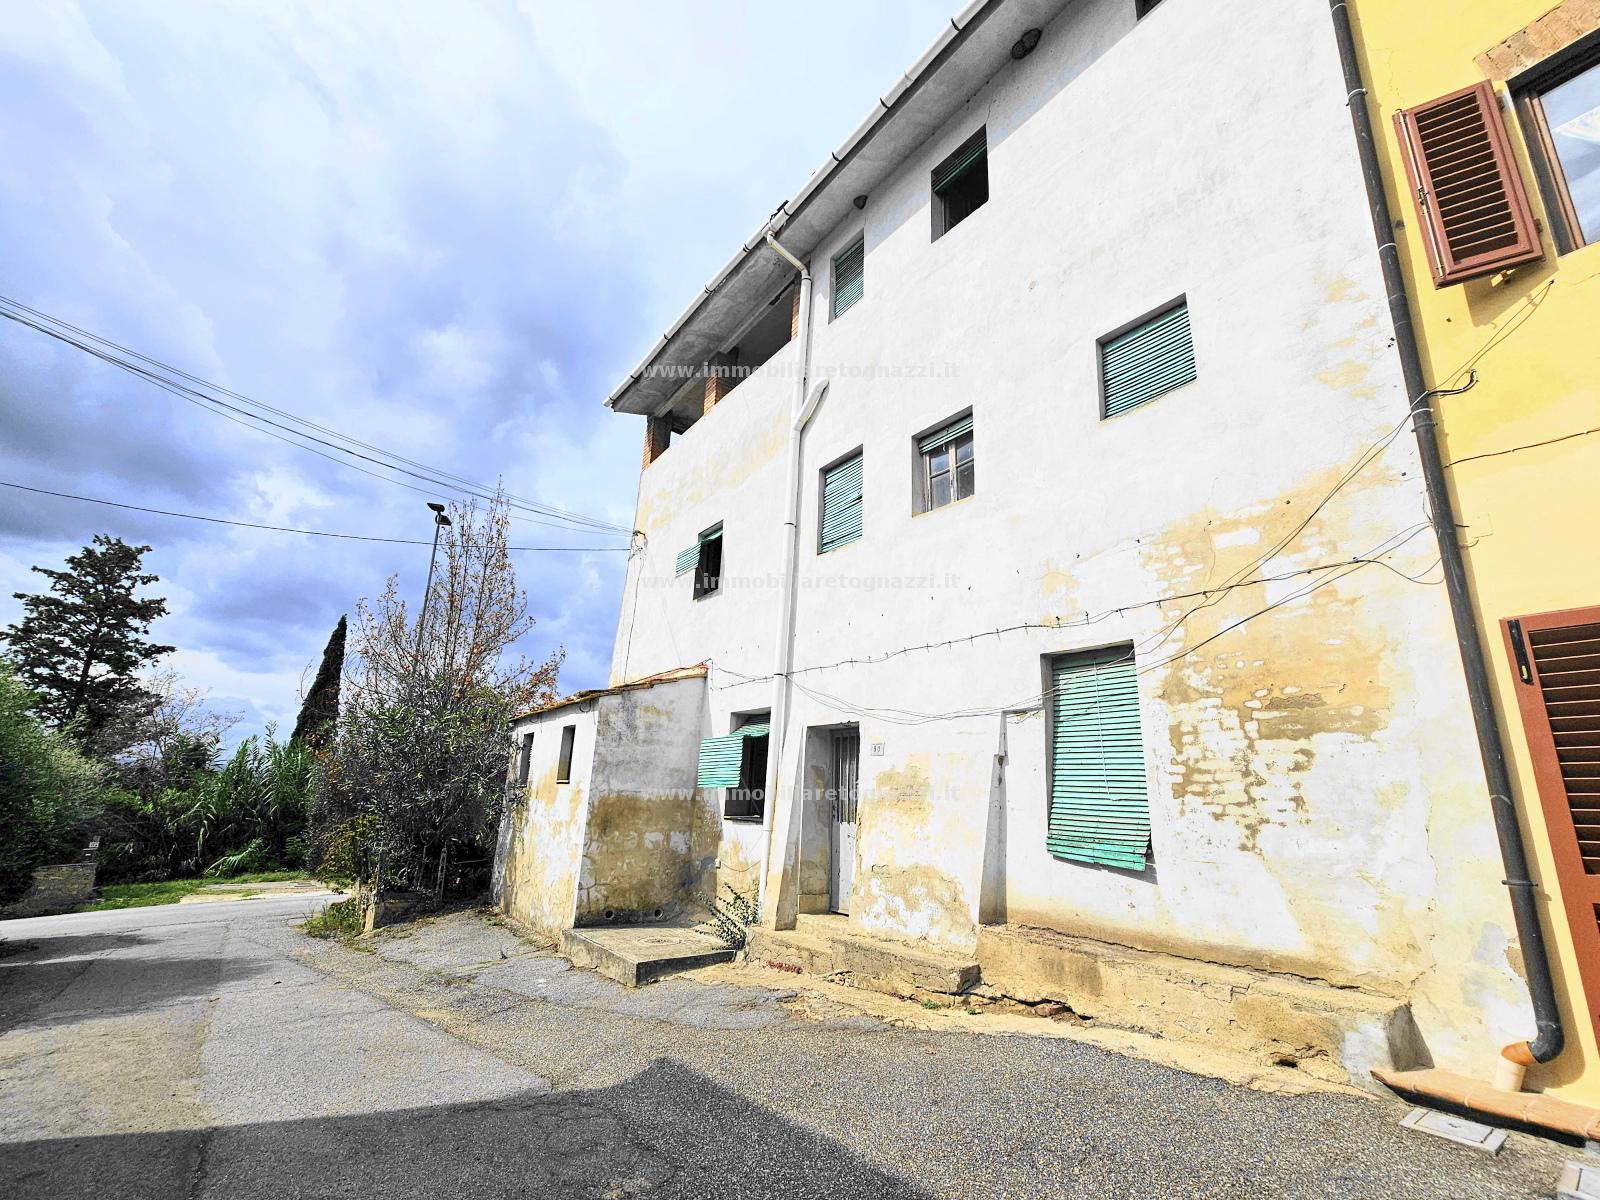 Villa a Schiera in vendita a Montespertoli, 10 locali, prezzo € 165.000 | CambioCasa.it